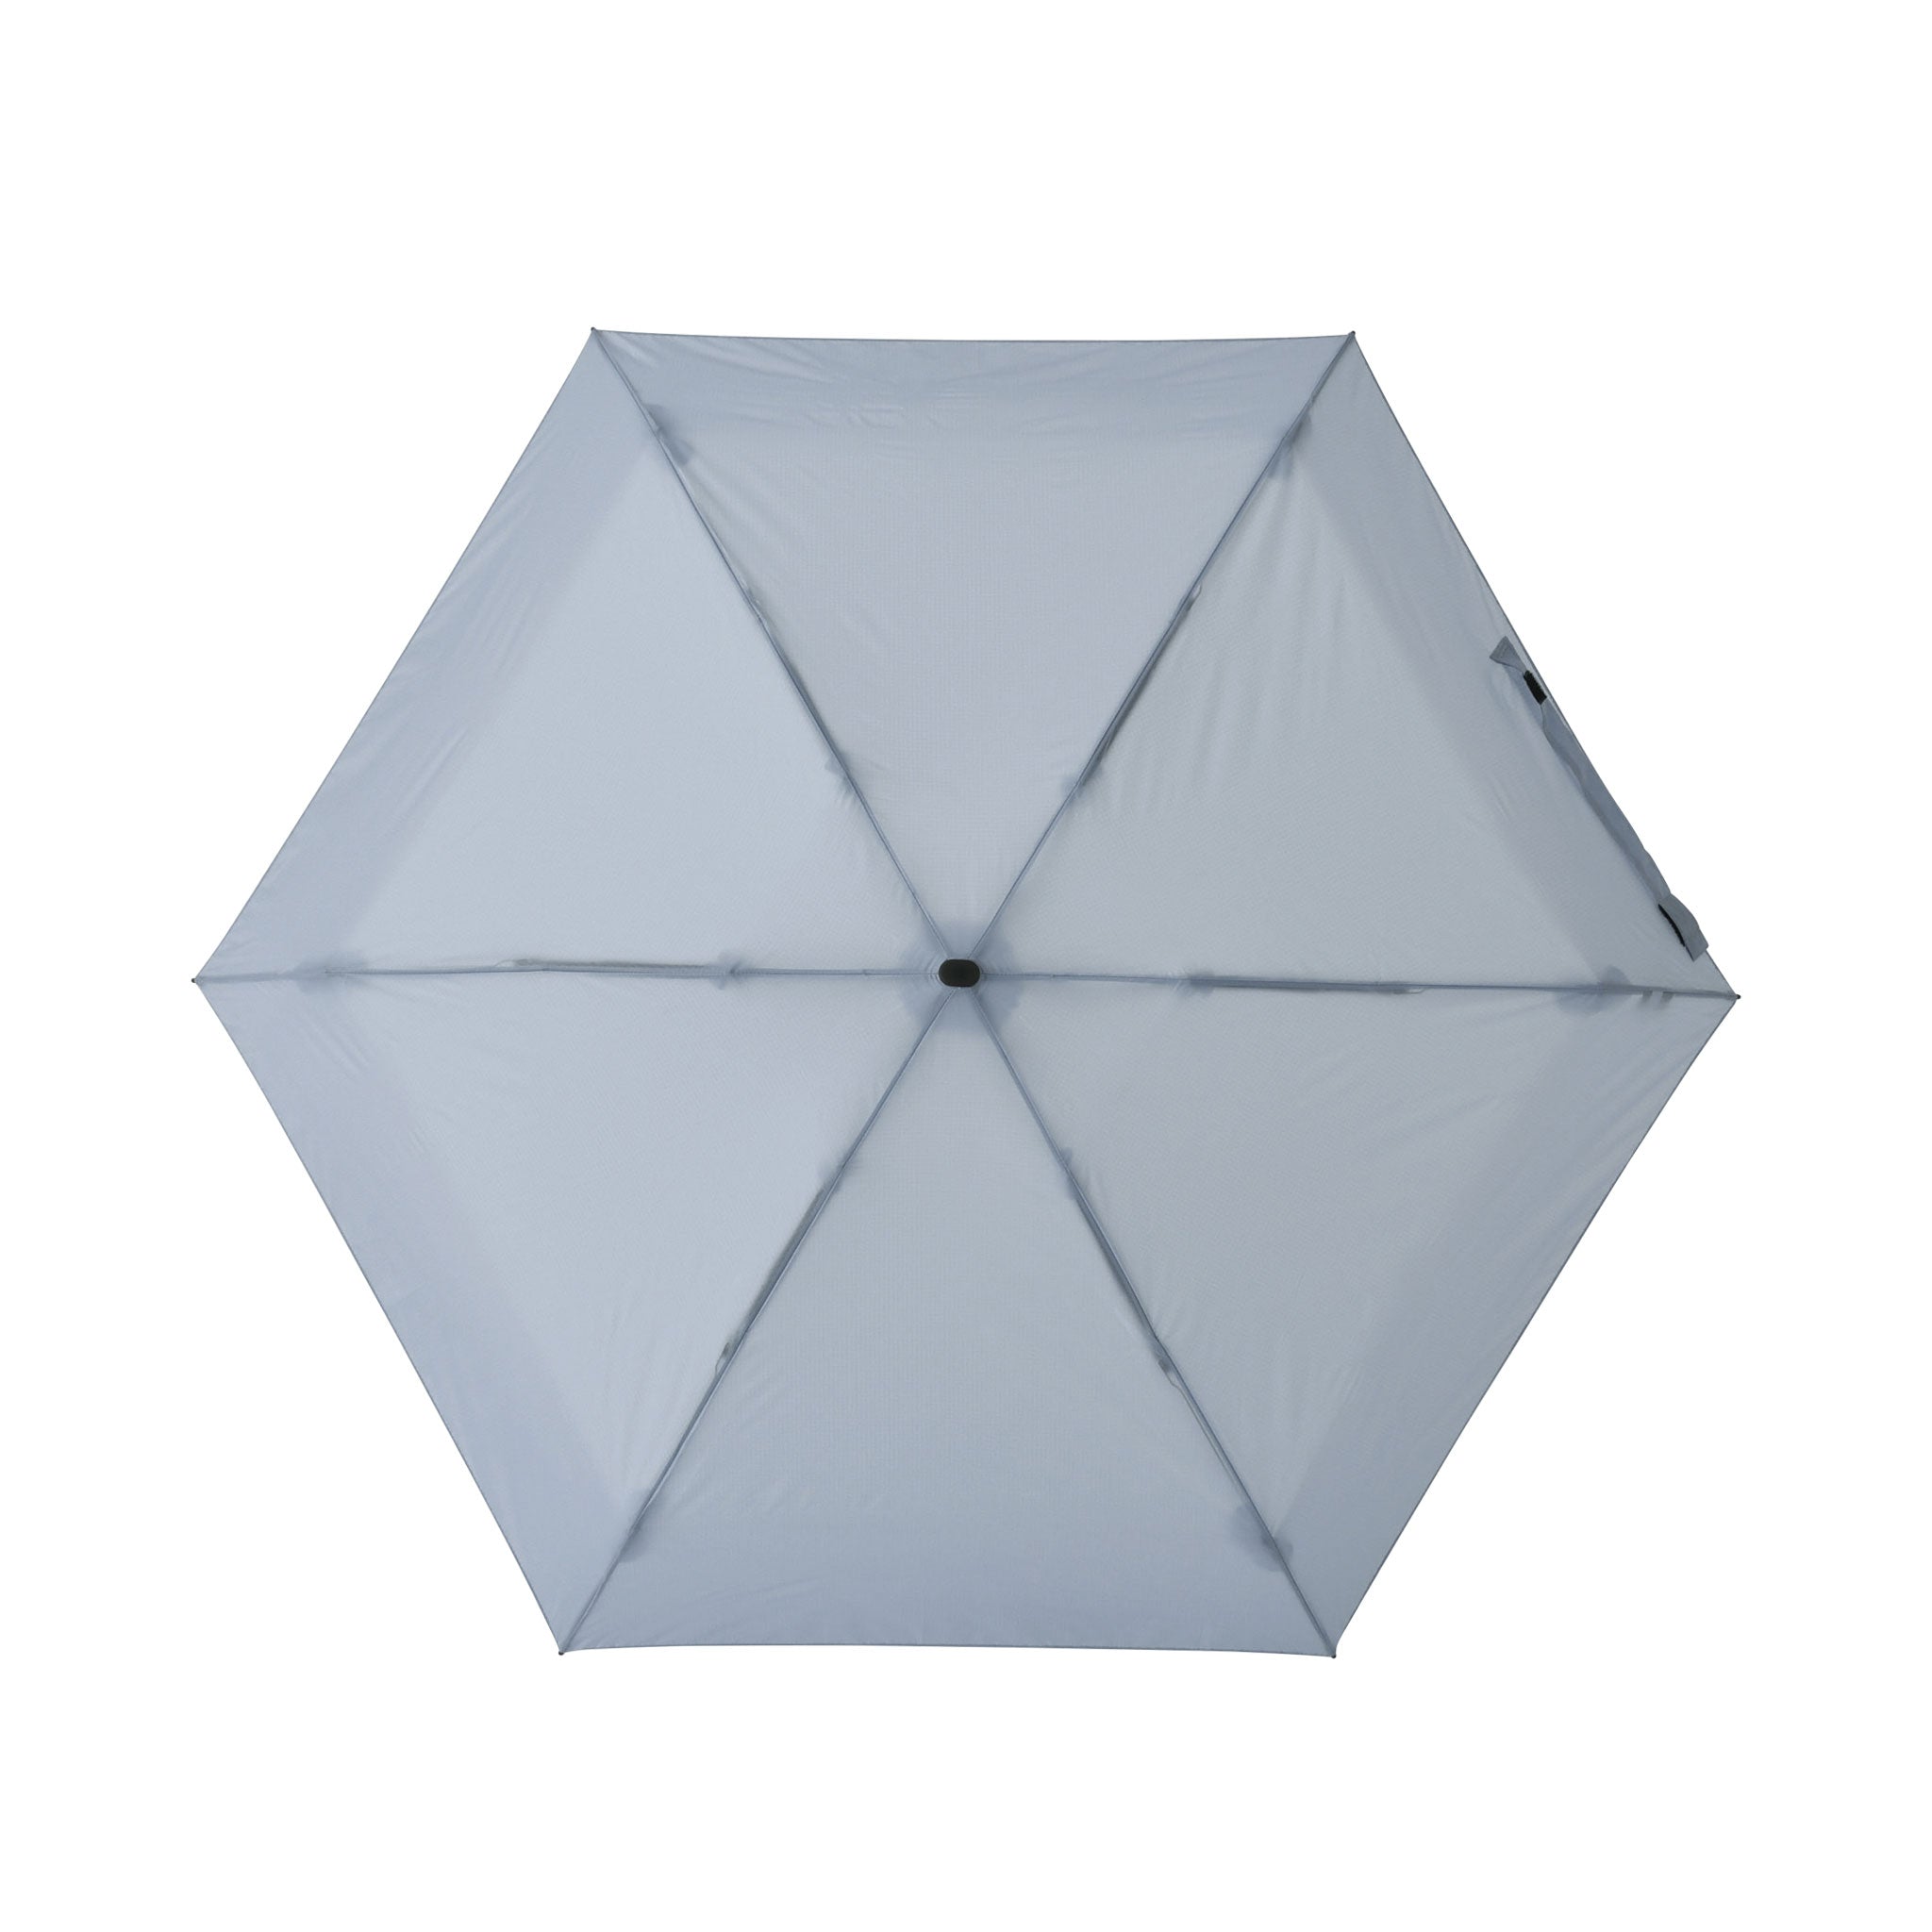 収納時14.8cmの超コンパクト折りたたみ傘【フラットライトマイクロ】（ライトブルー）